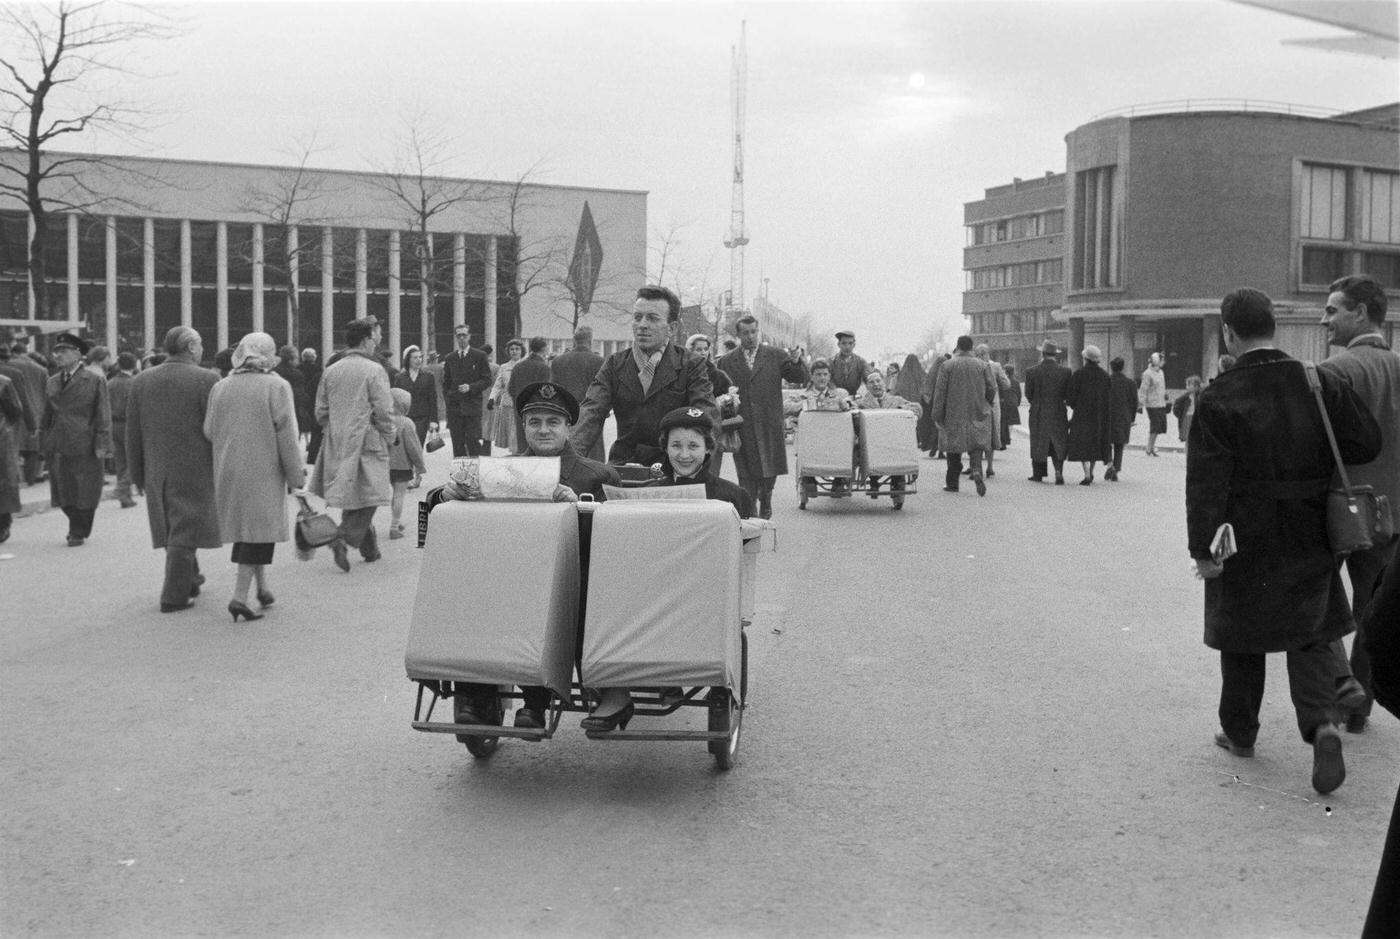 Brussels World's Fair, 1958